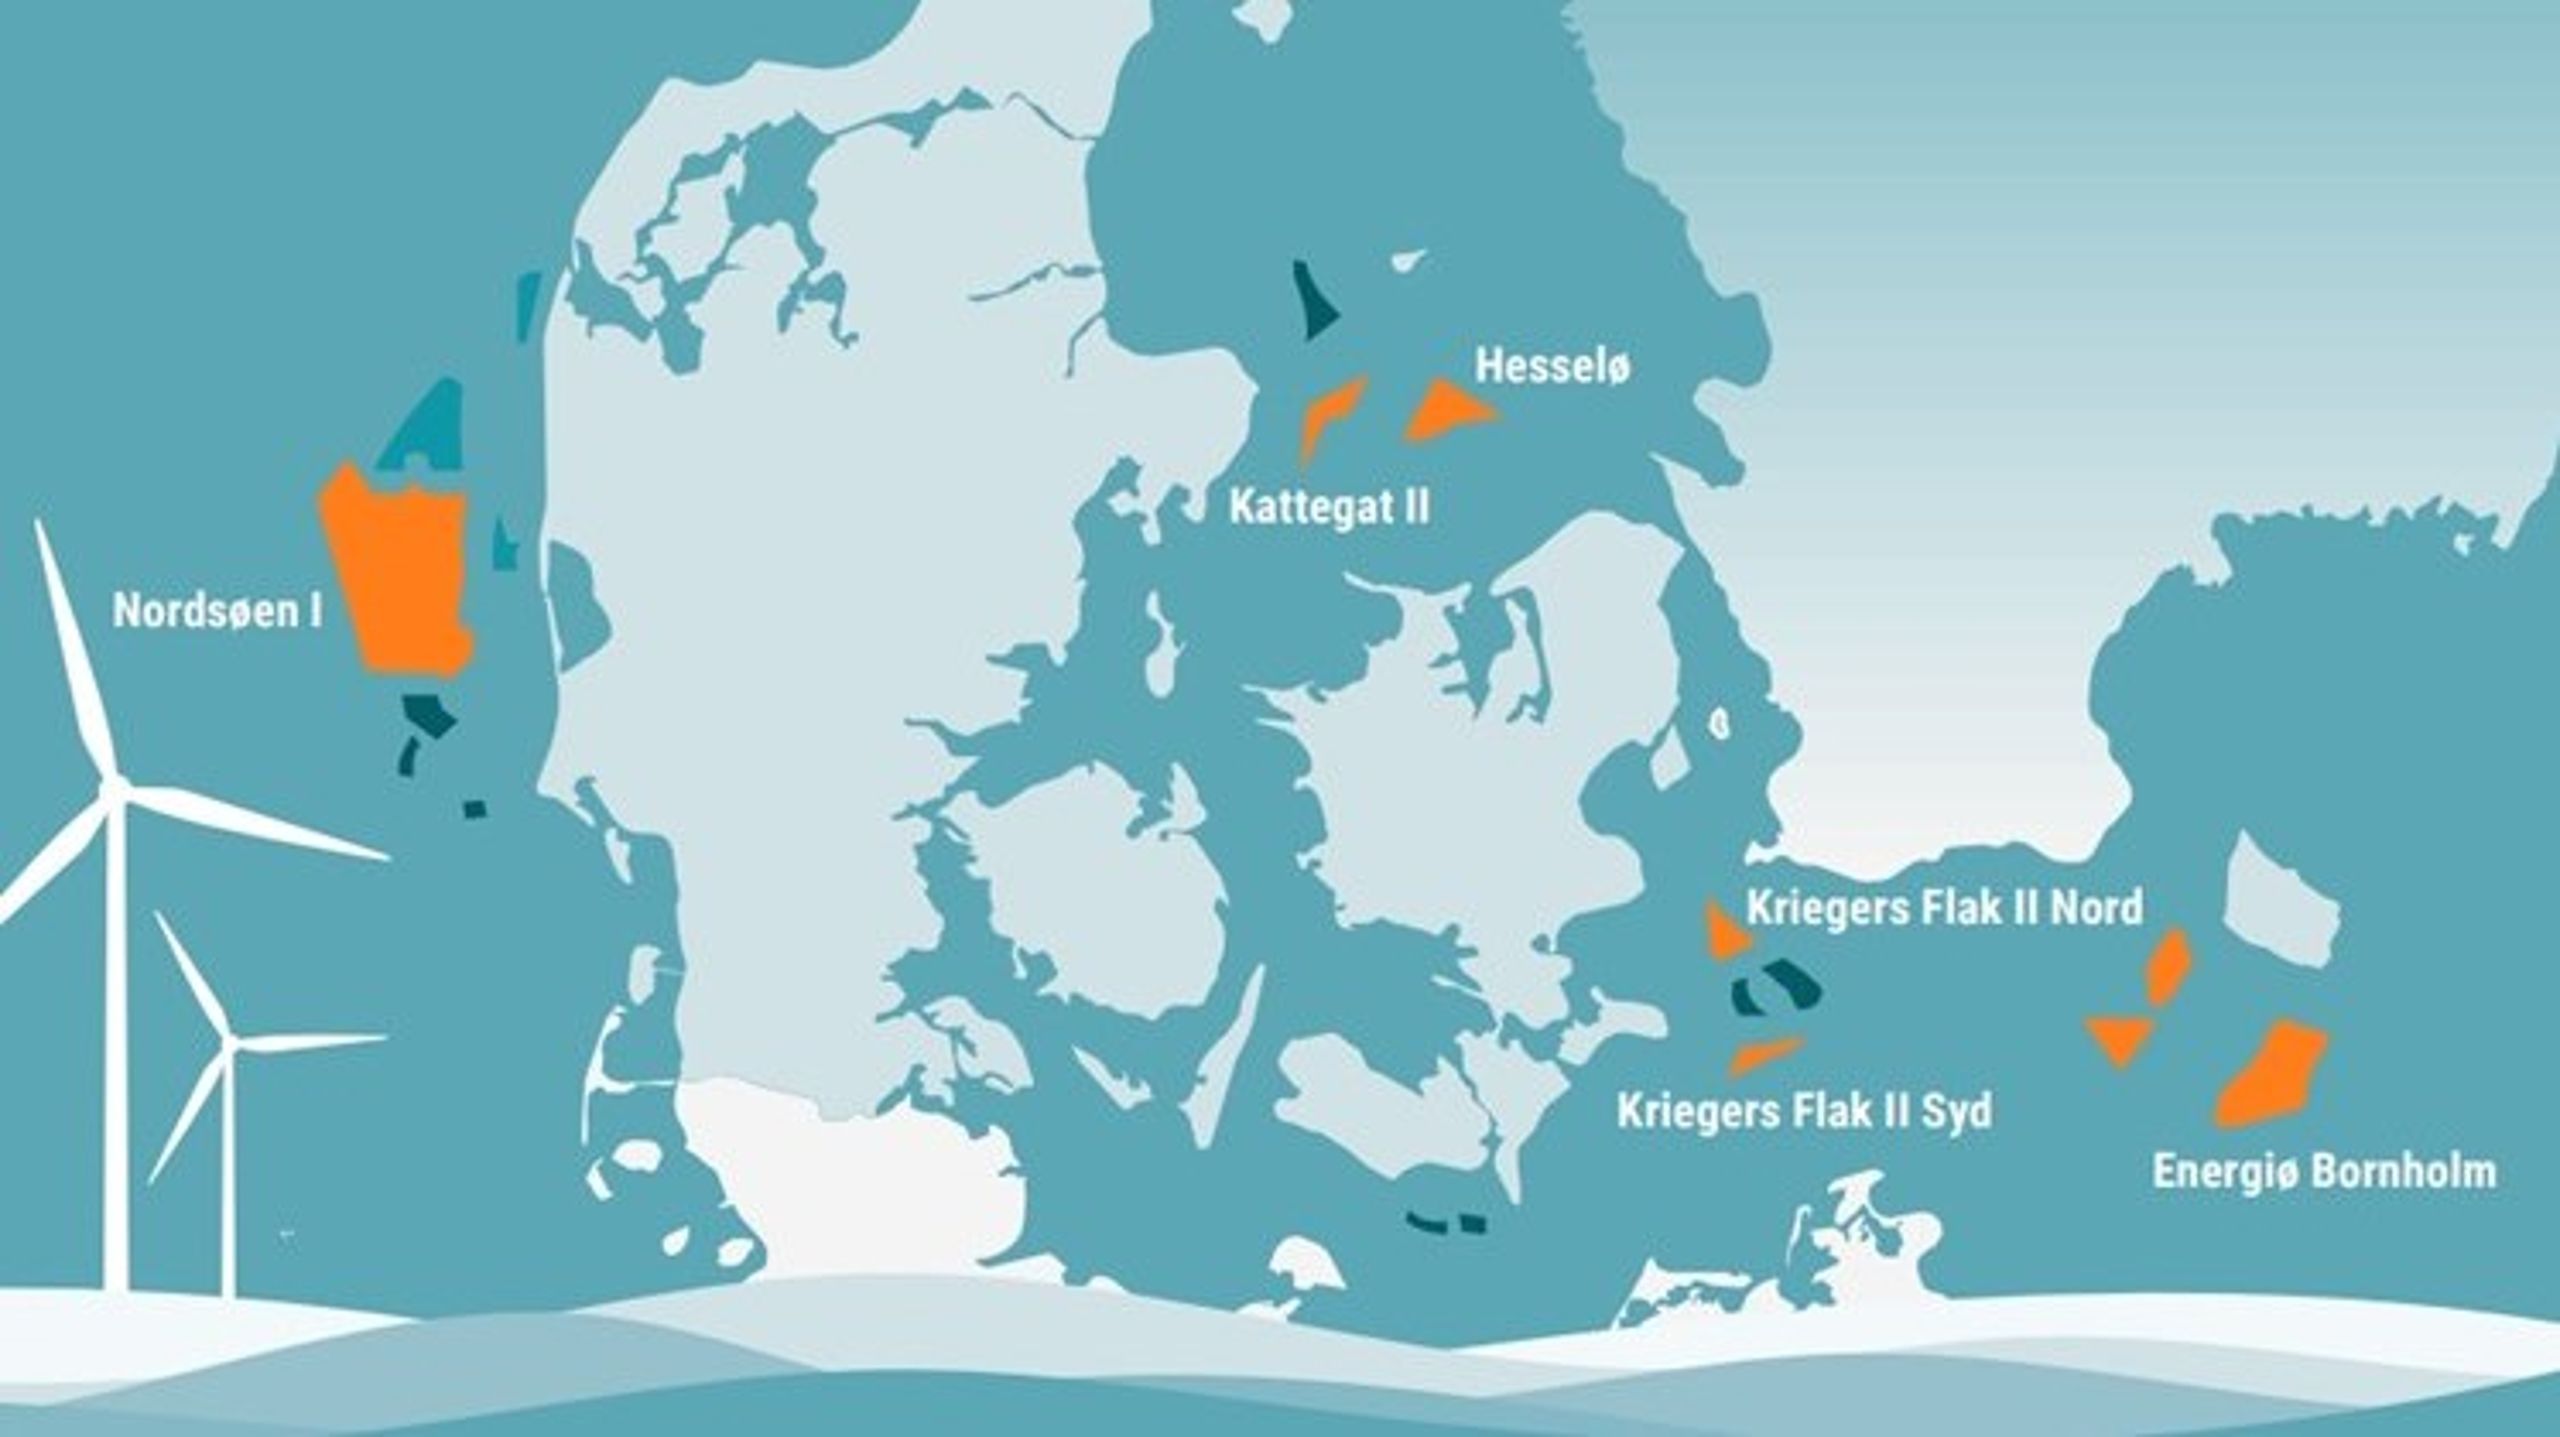 Kommer liknande kartor att presenteras över svenska vatten framöver? Det kan bli utfallet om havsvindsutredaren går vidare med det förslag som anses&nbsp;”naturligt”<br>